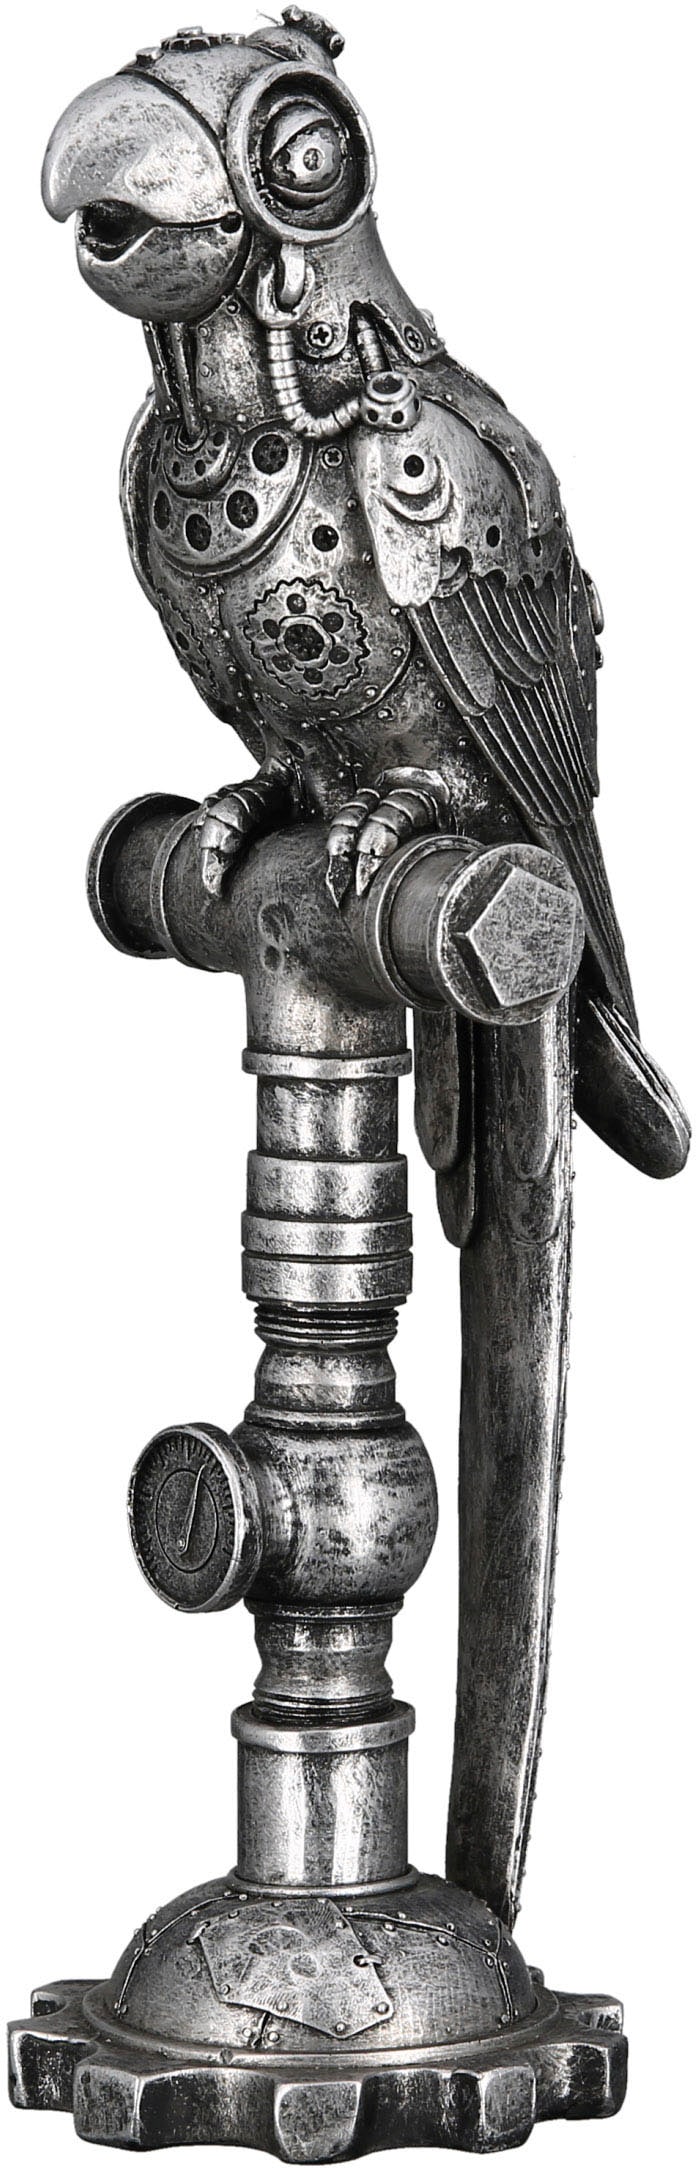 Tierfigur »Skulptur Parrot Steampunk«